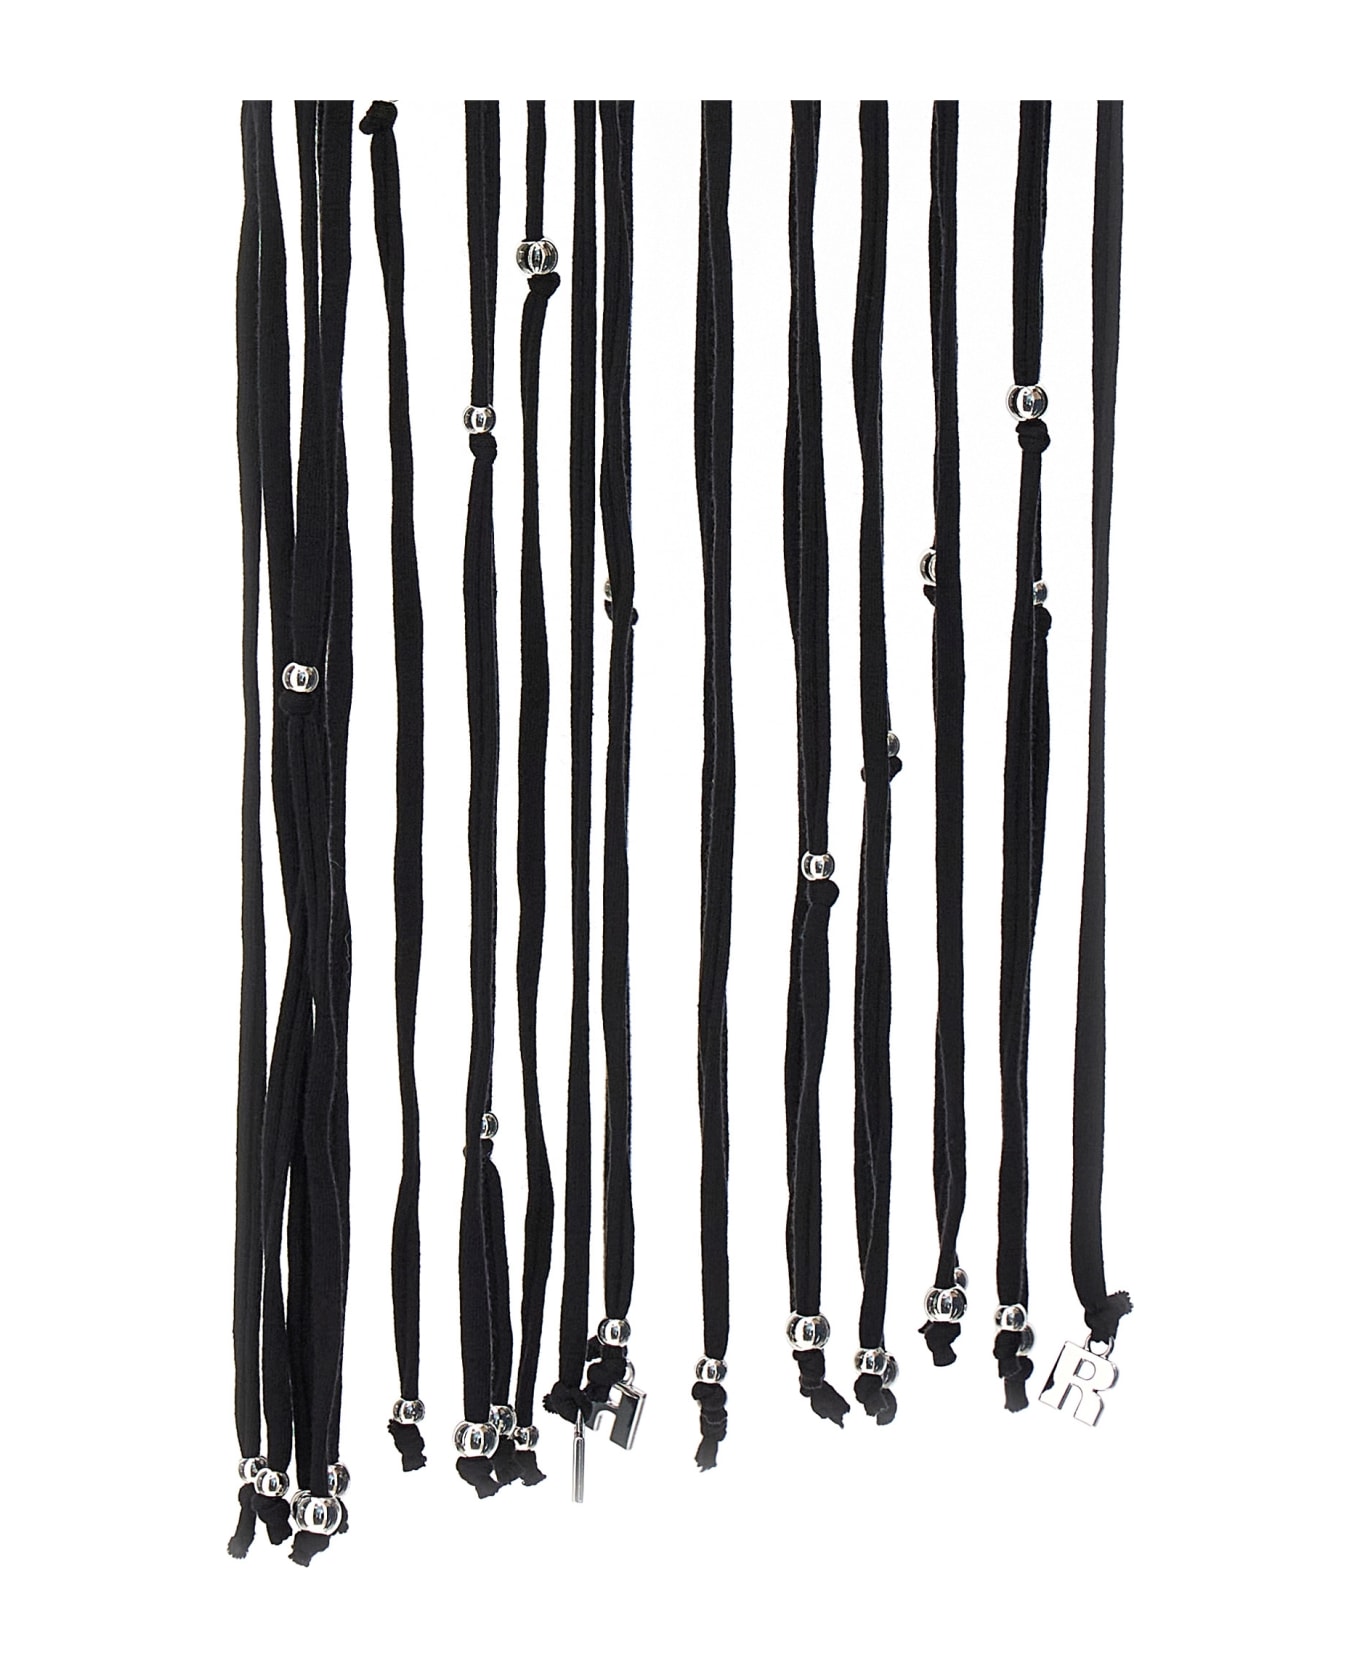 Rotate by Birger Christensen Sunday Capsule Beads Fringed Skirt - Black   スカート